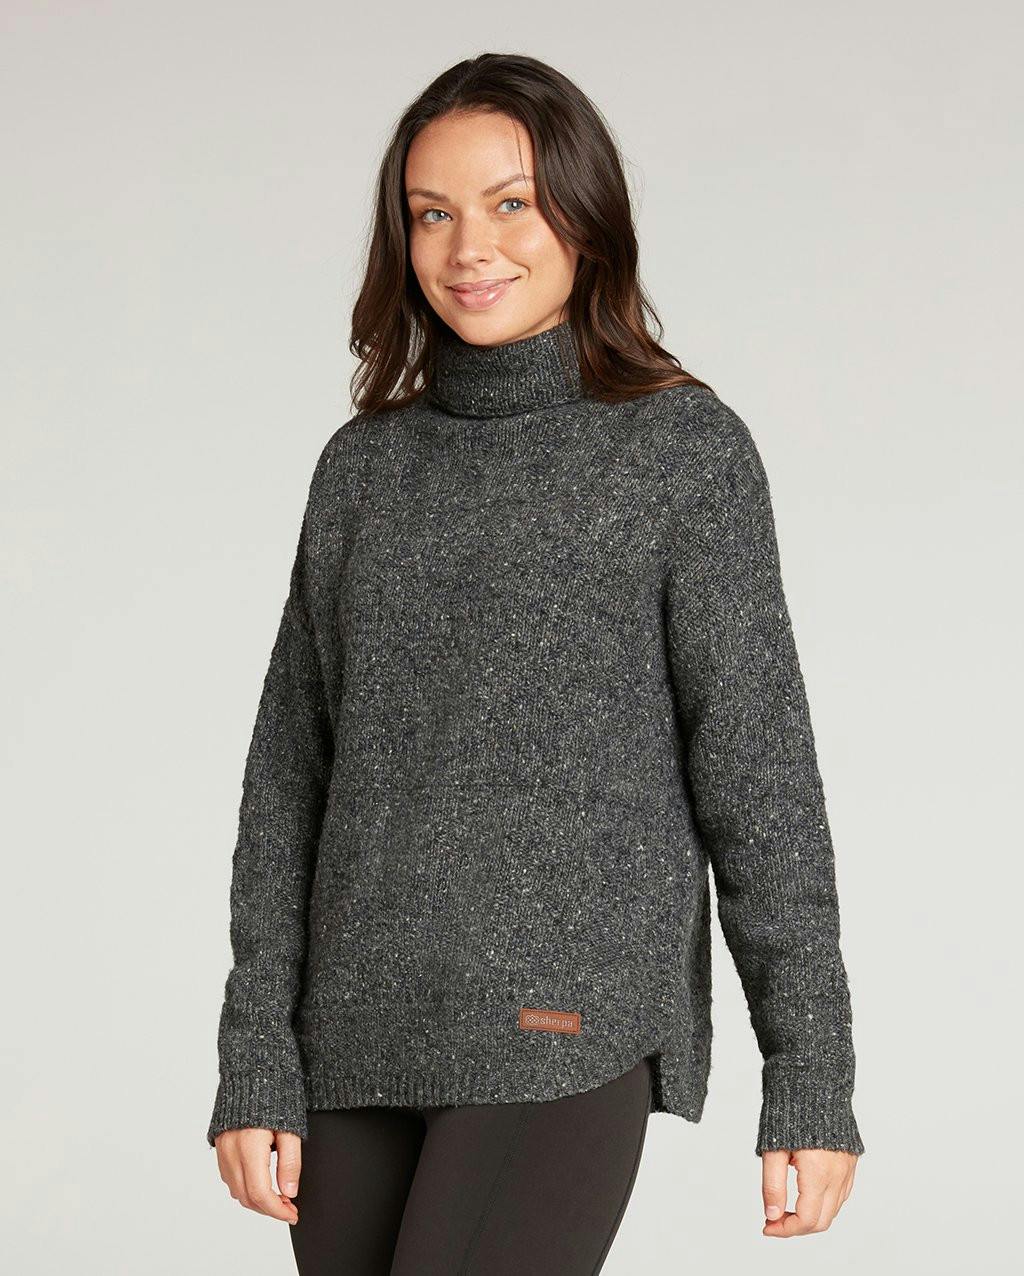 Sherpa Adventure Gear Women's Yuden Pullover Sweater